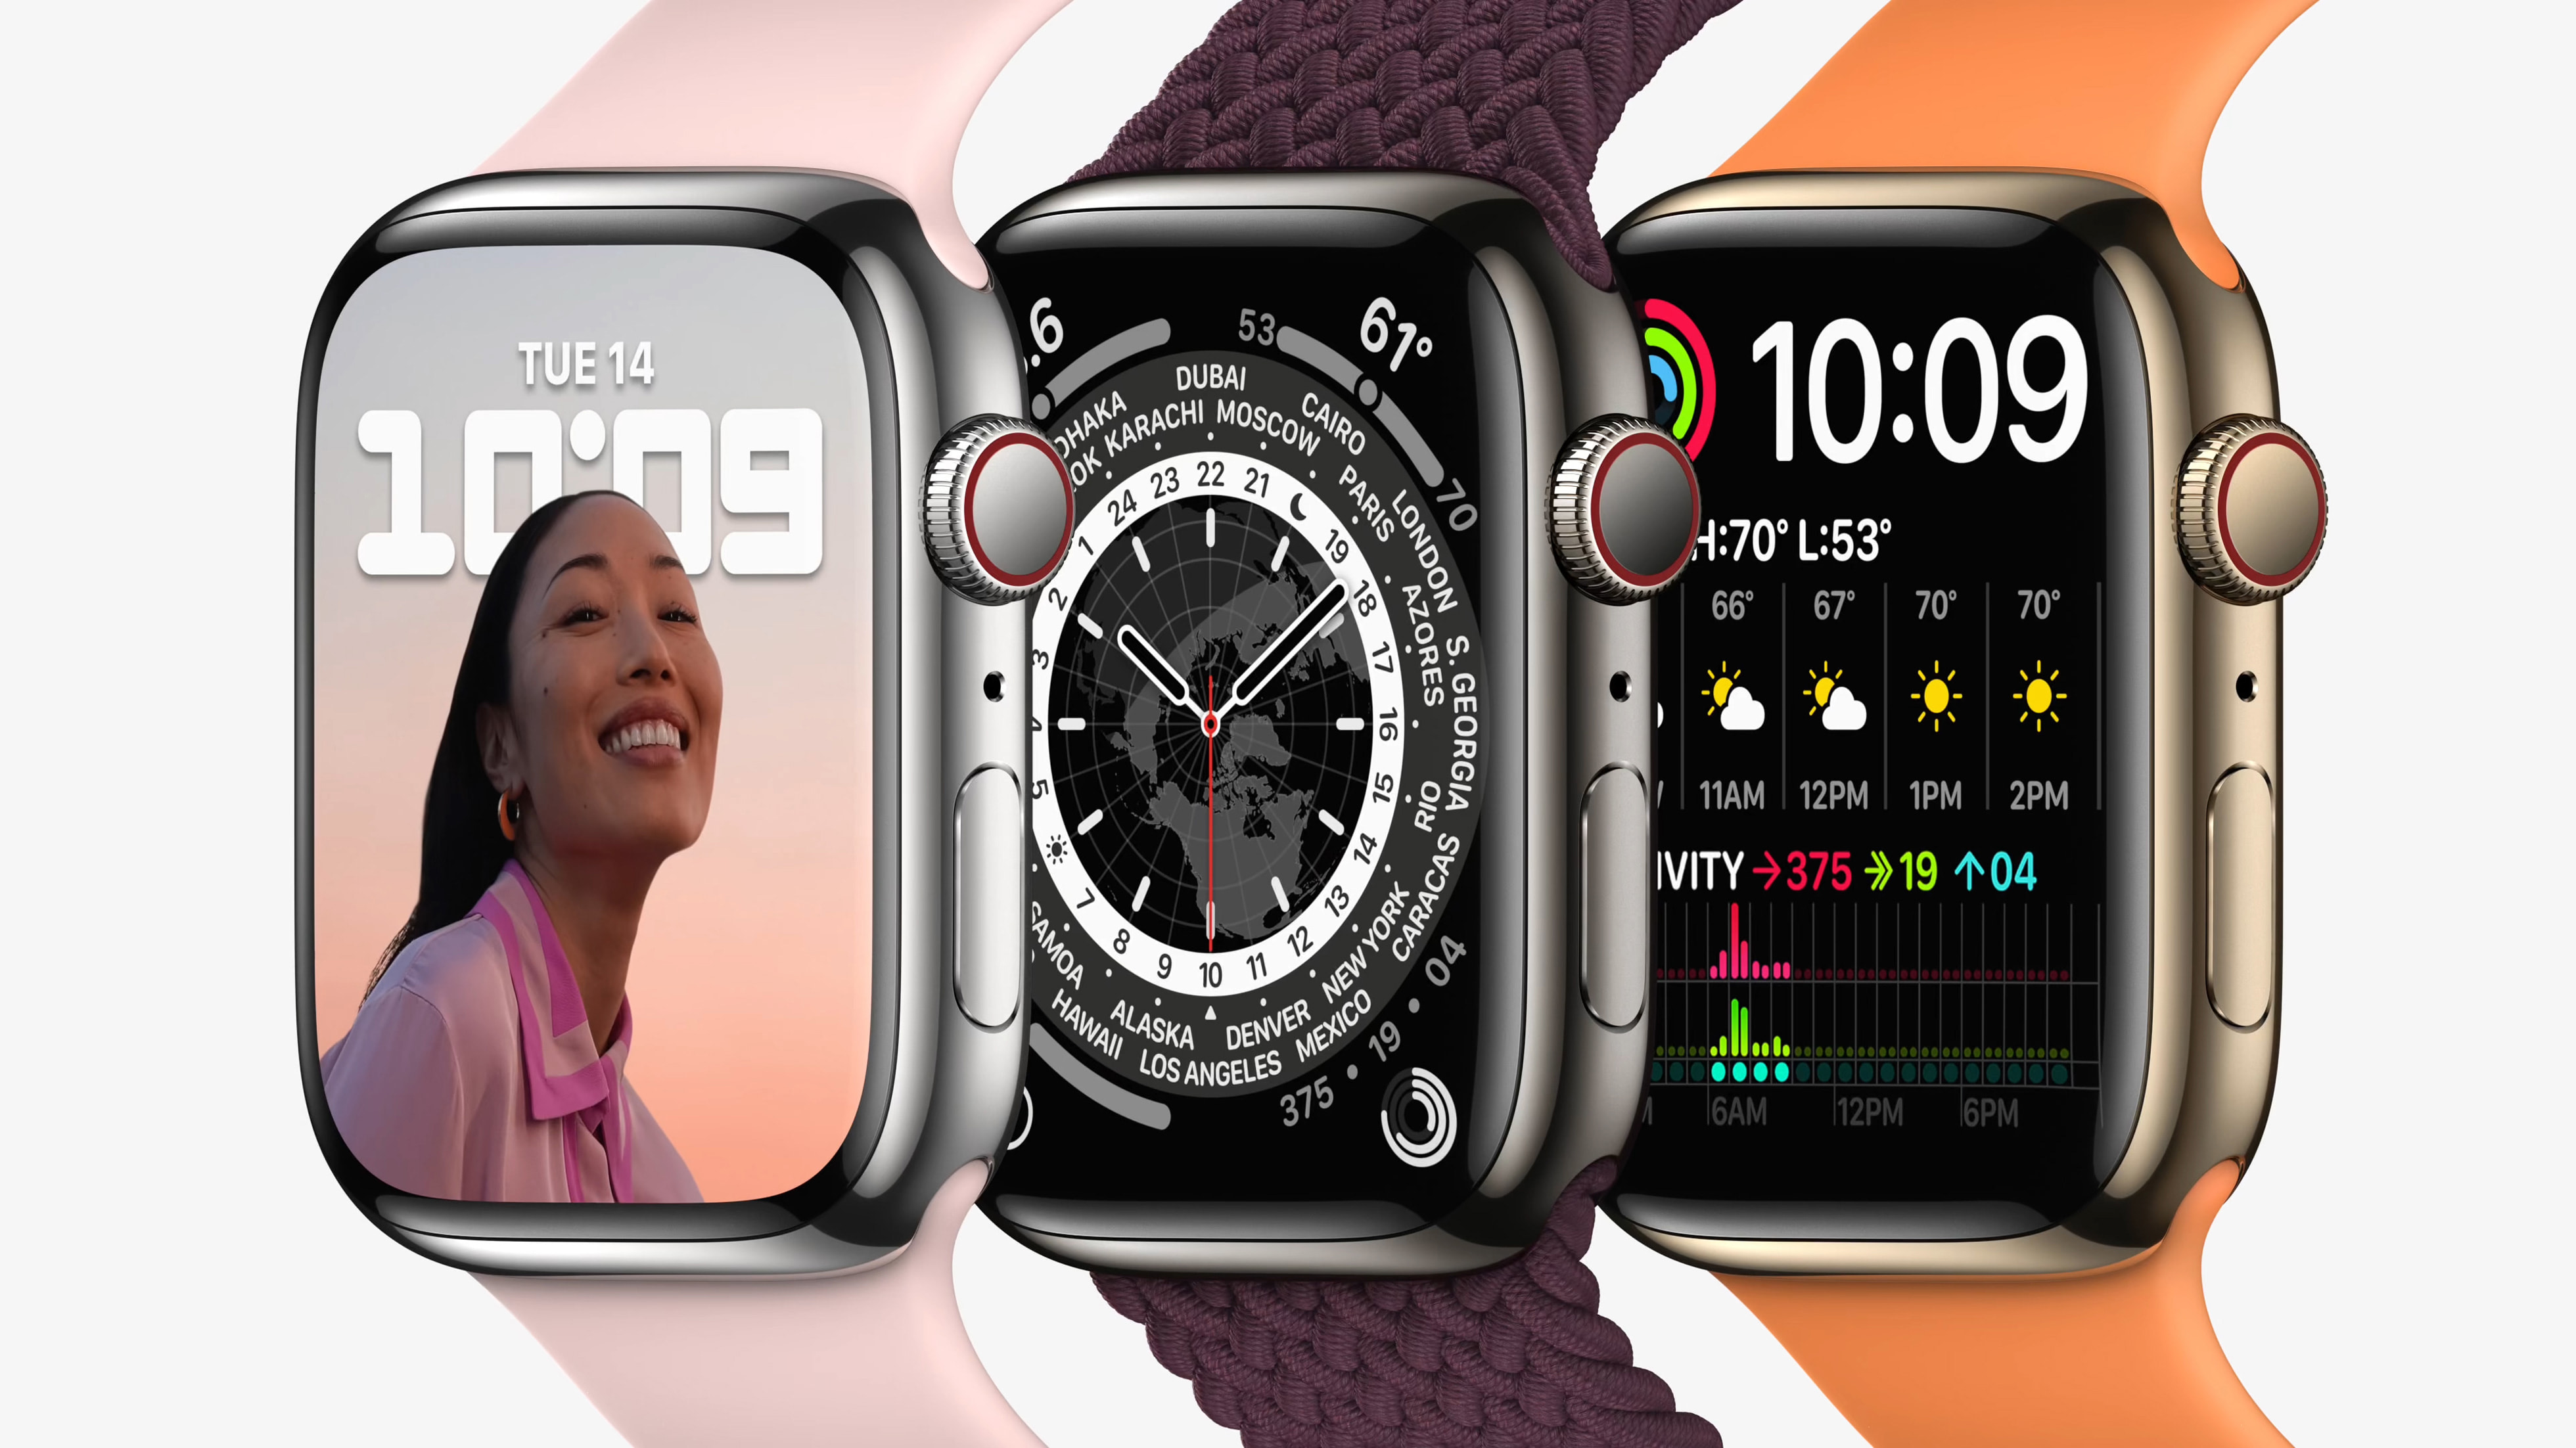 Chytré hodinky Apple Watch Series 7 přináší kromě špičkového výkonu a líbivého designu také celou řadu praktických funkcí.